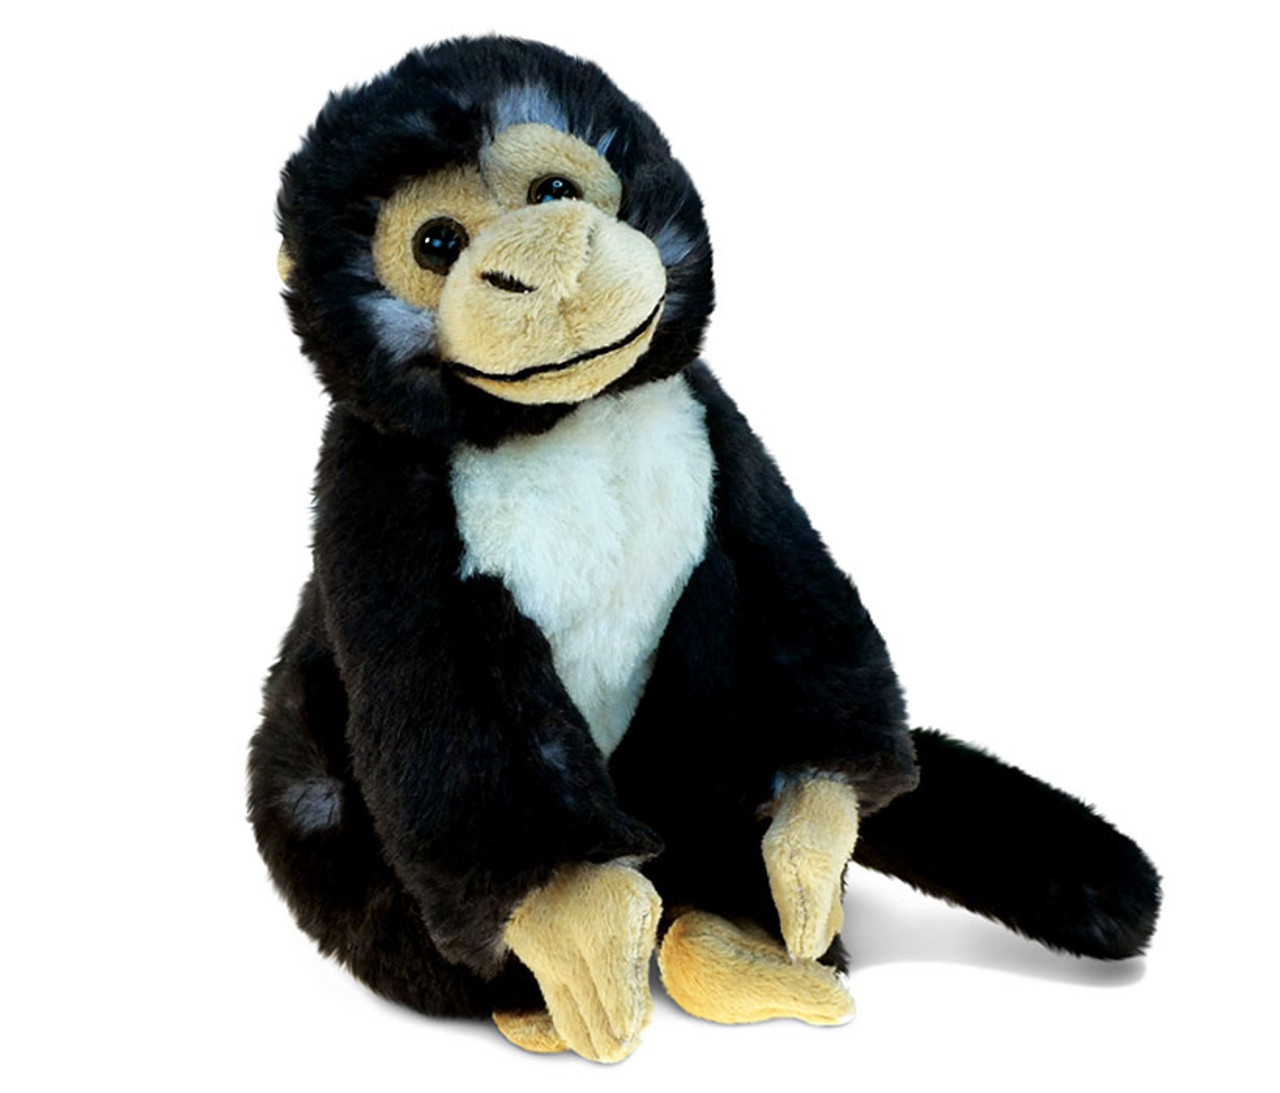 stuffed capuchin monkey